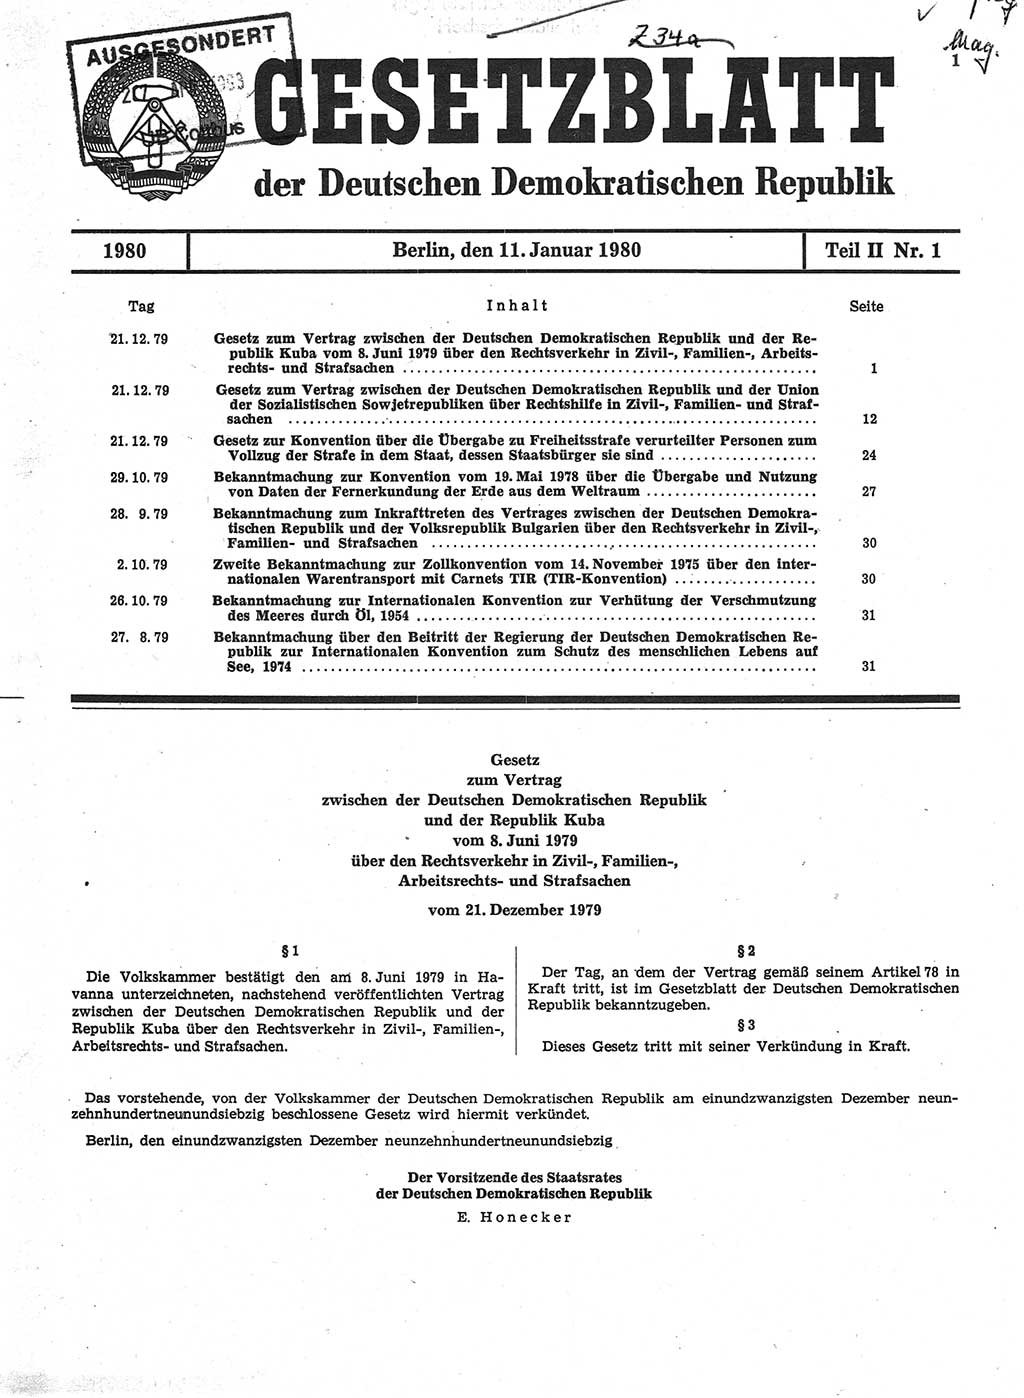 Gesetzblatt (GBl.) der Deutschen Demokratischen Republik (DDR) Teil ⅠⅠ 1980, Seite 1 (GBl. DDR ⅠⅠ 1980, S. 1)